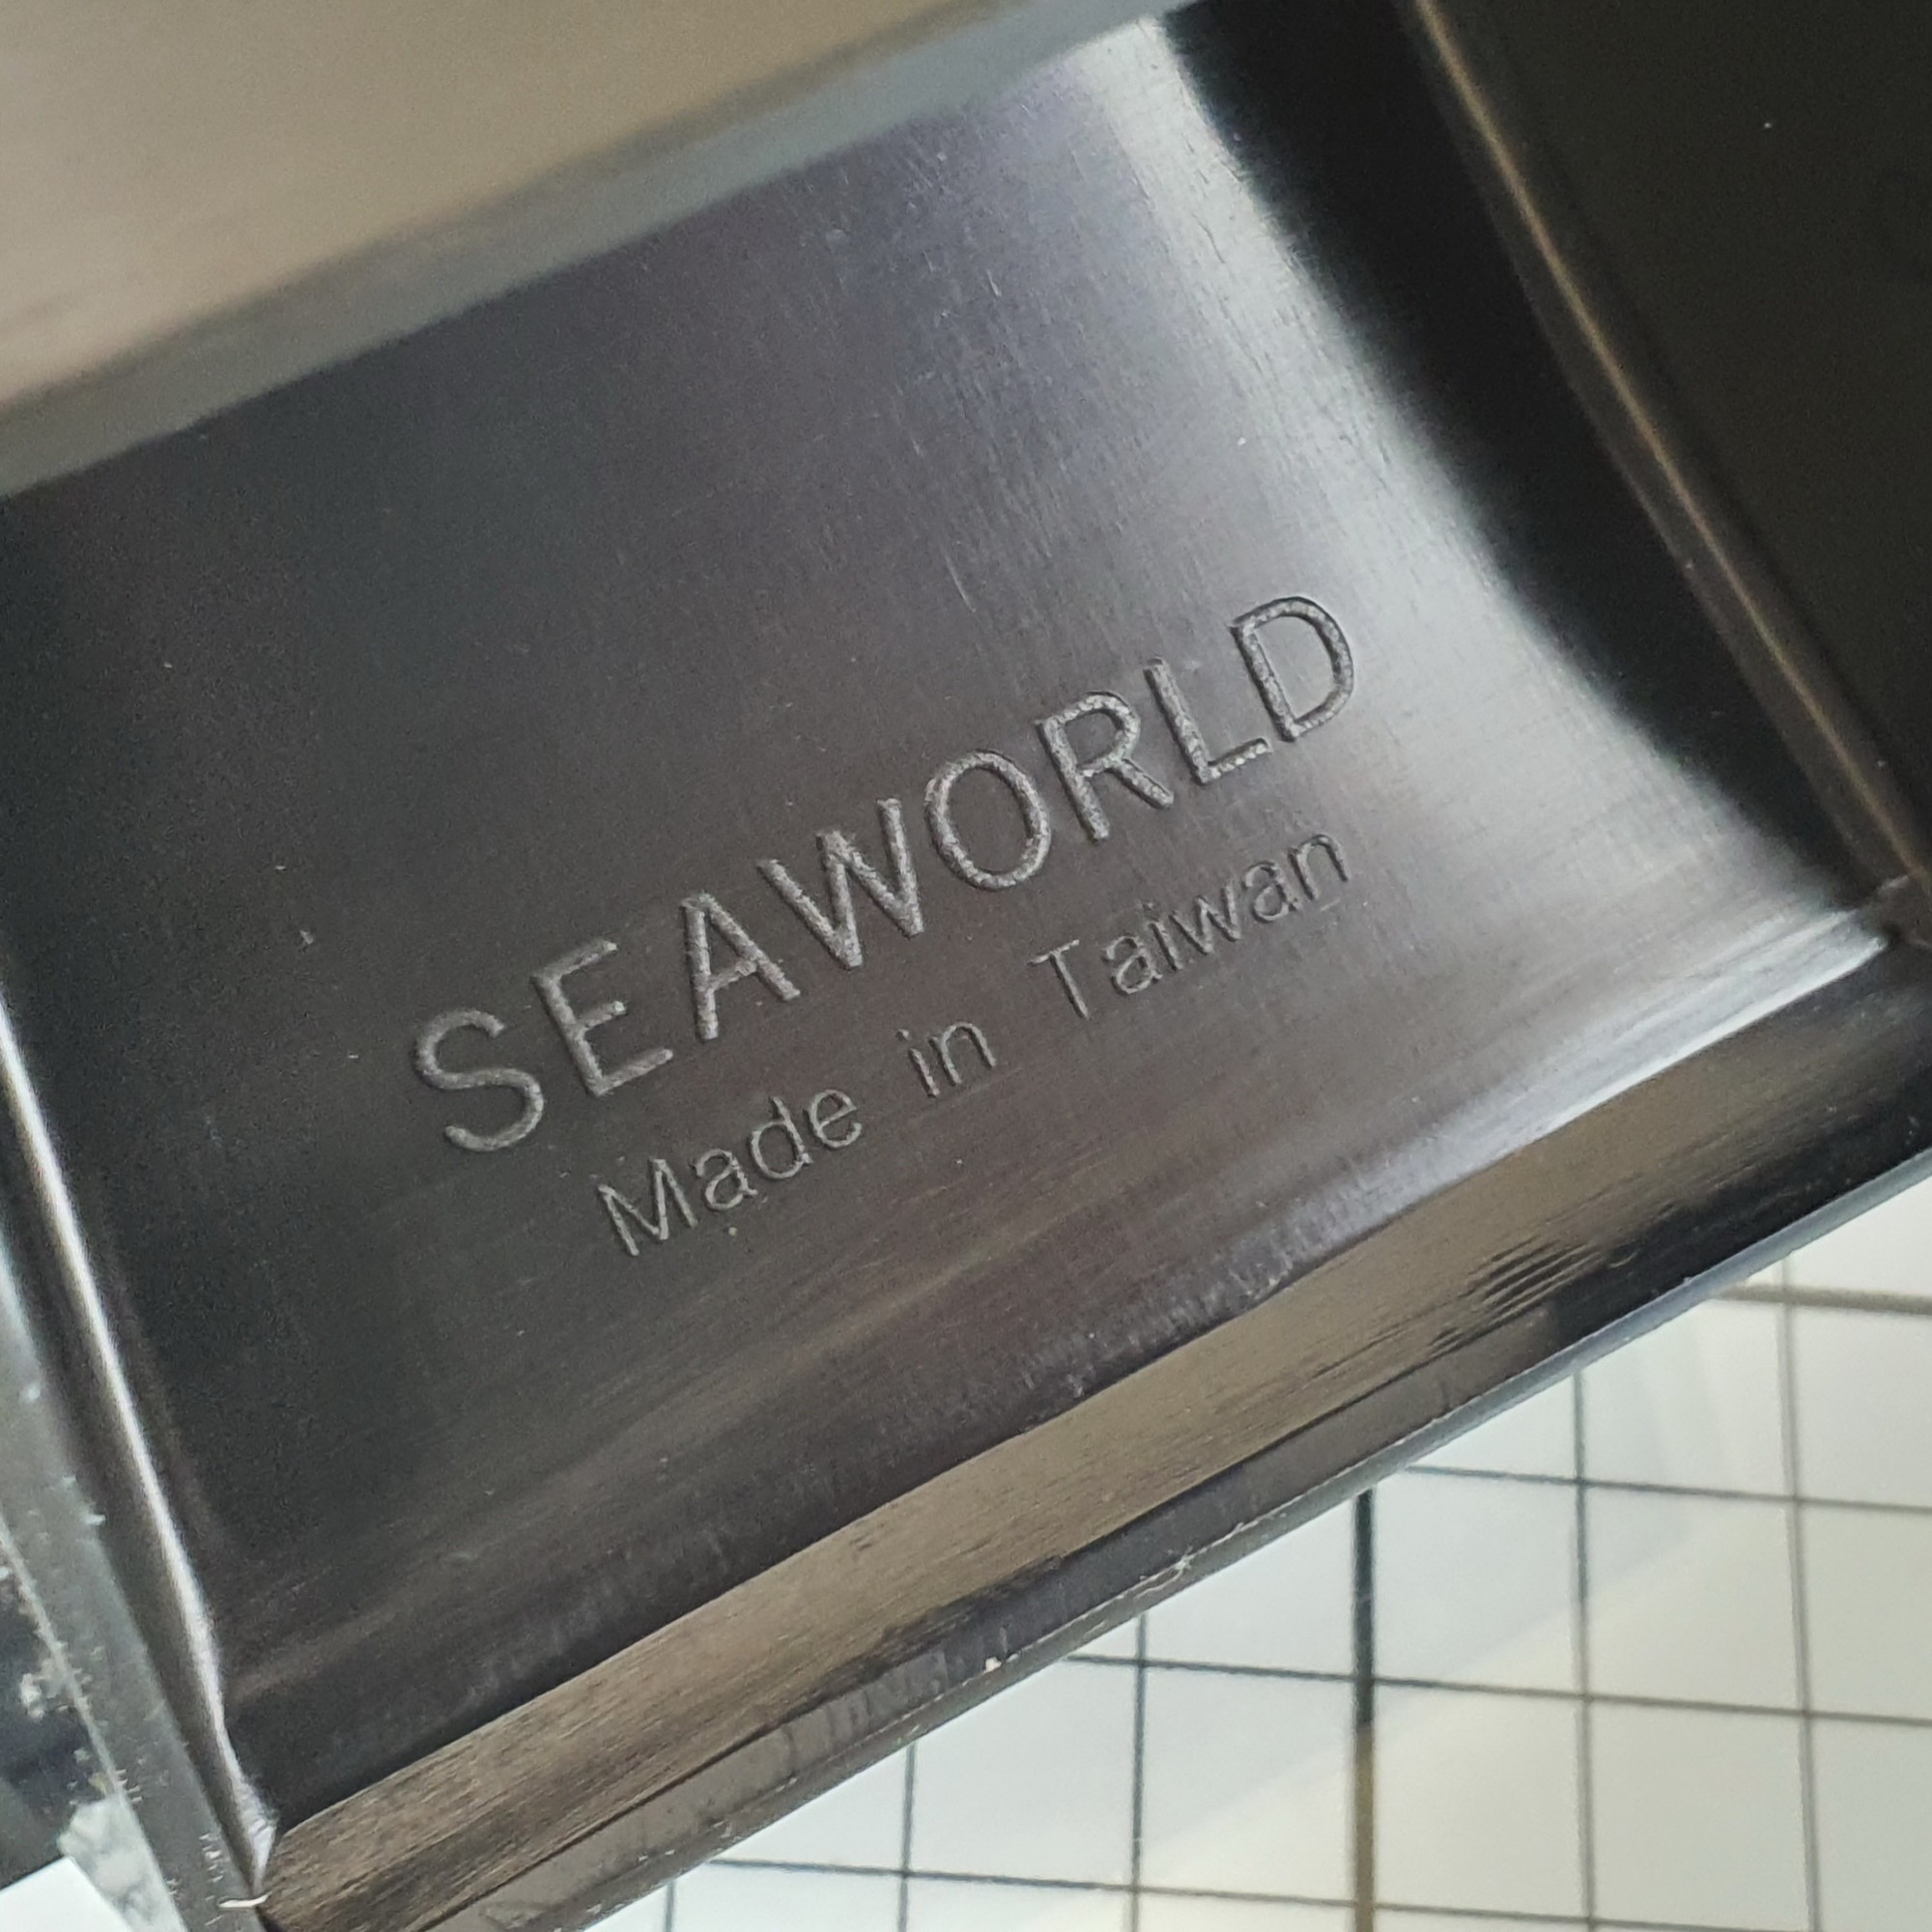 Купить Решетка вентиляционная нерегулируемая Seaworld 27290 336x122мм 5 ячеек из чёрной пластмассы 7ft.ru в интернет магазине Семь Футов